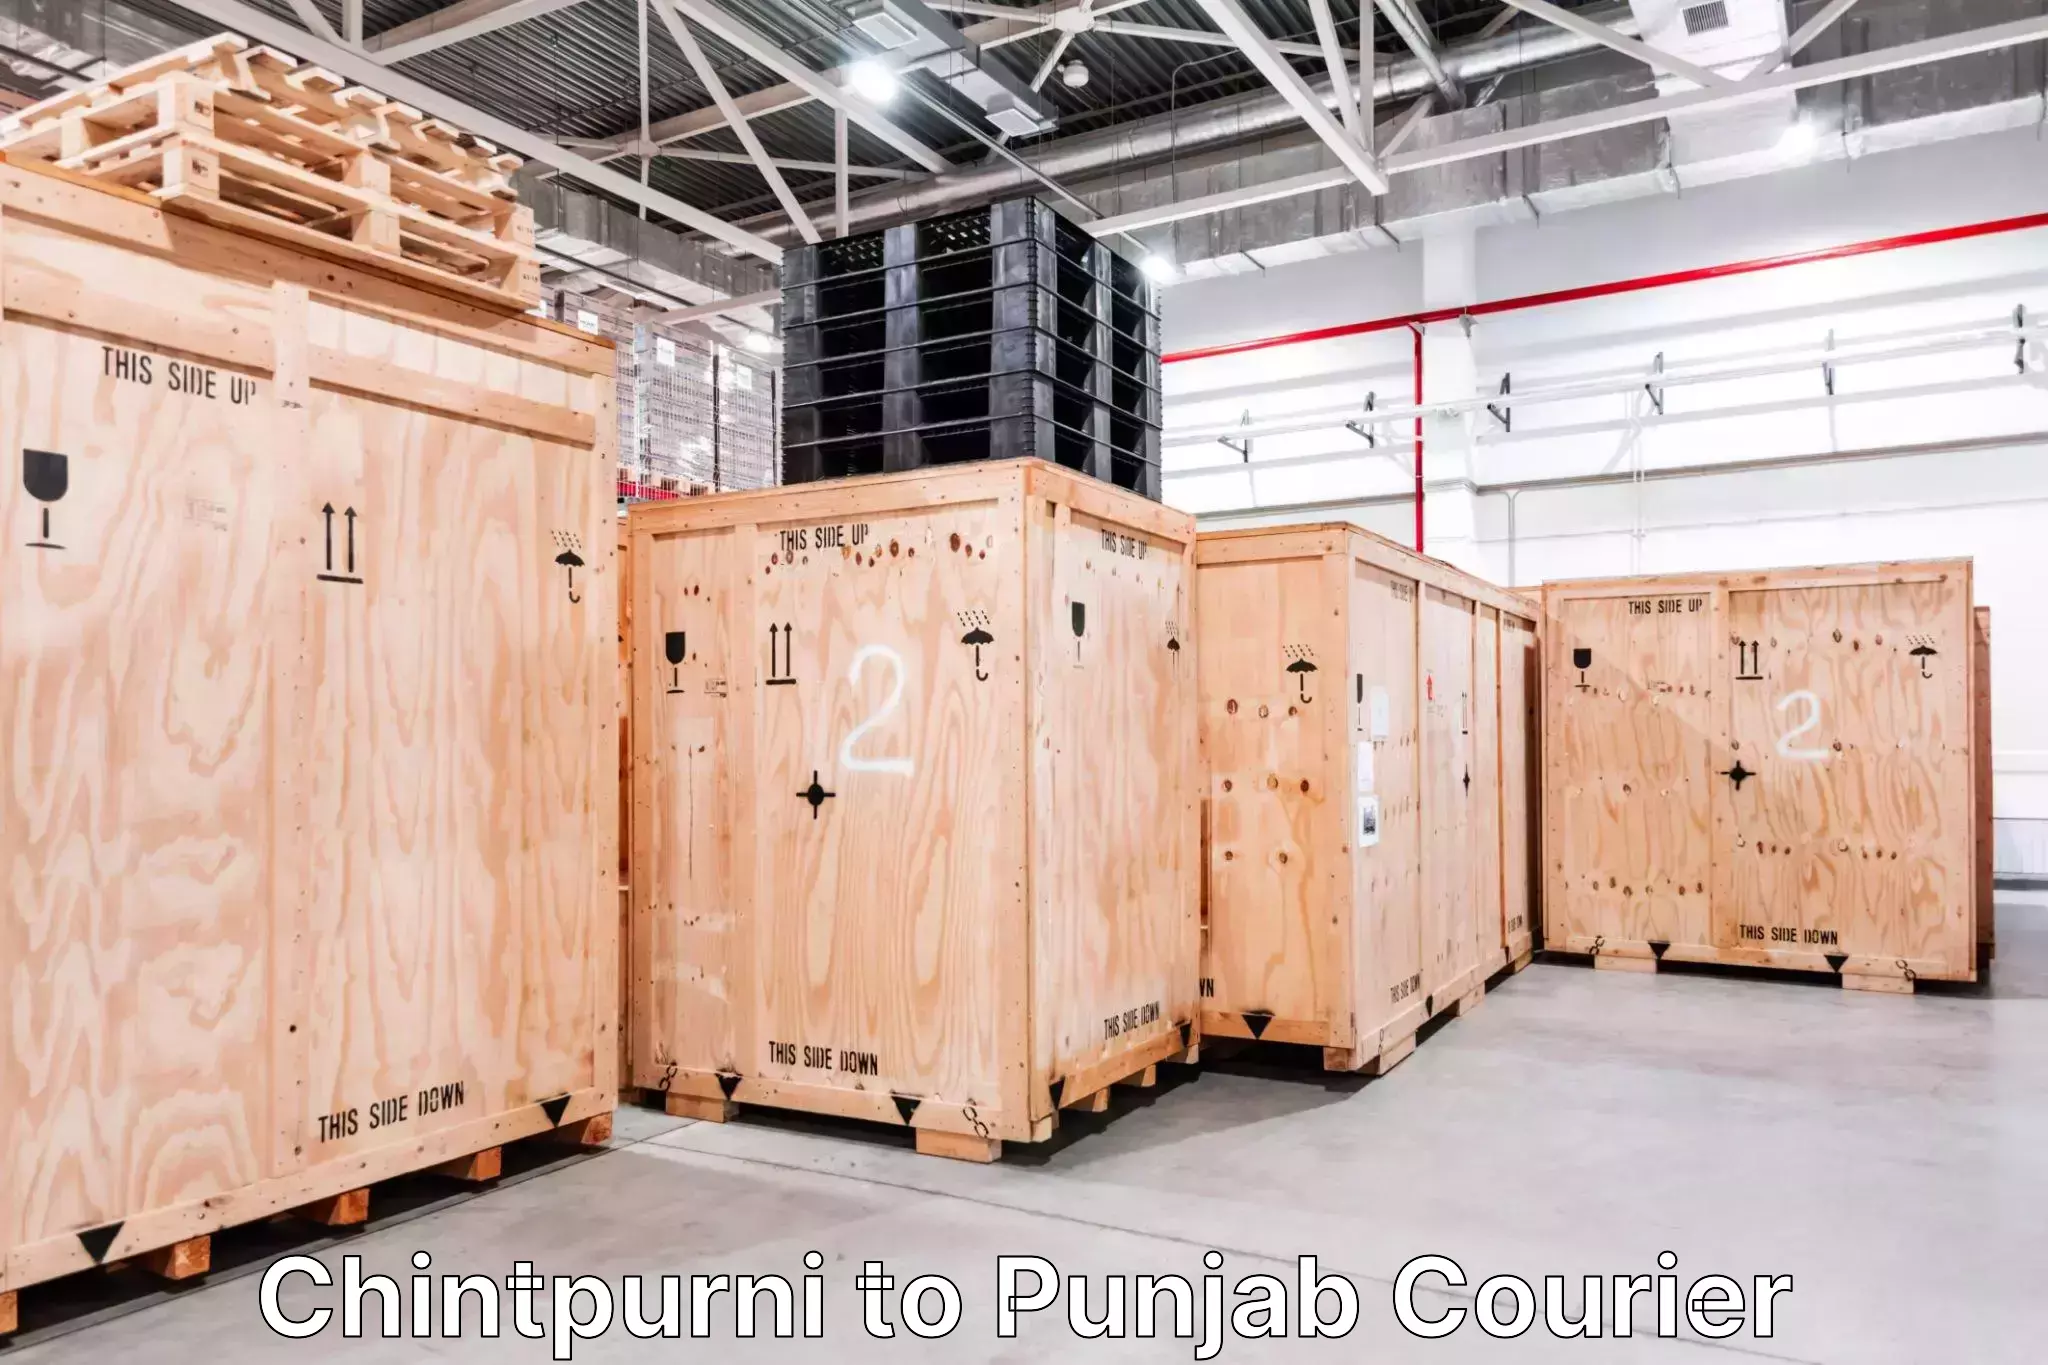 Luggage shipment strategy Chintpurni to Punjab